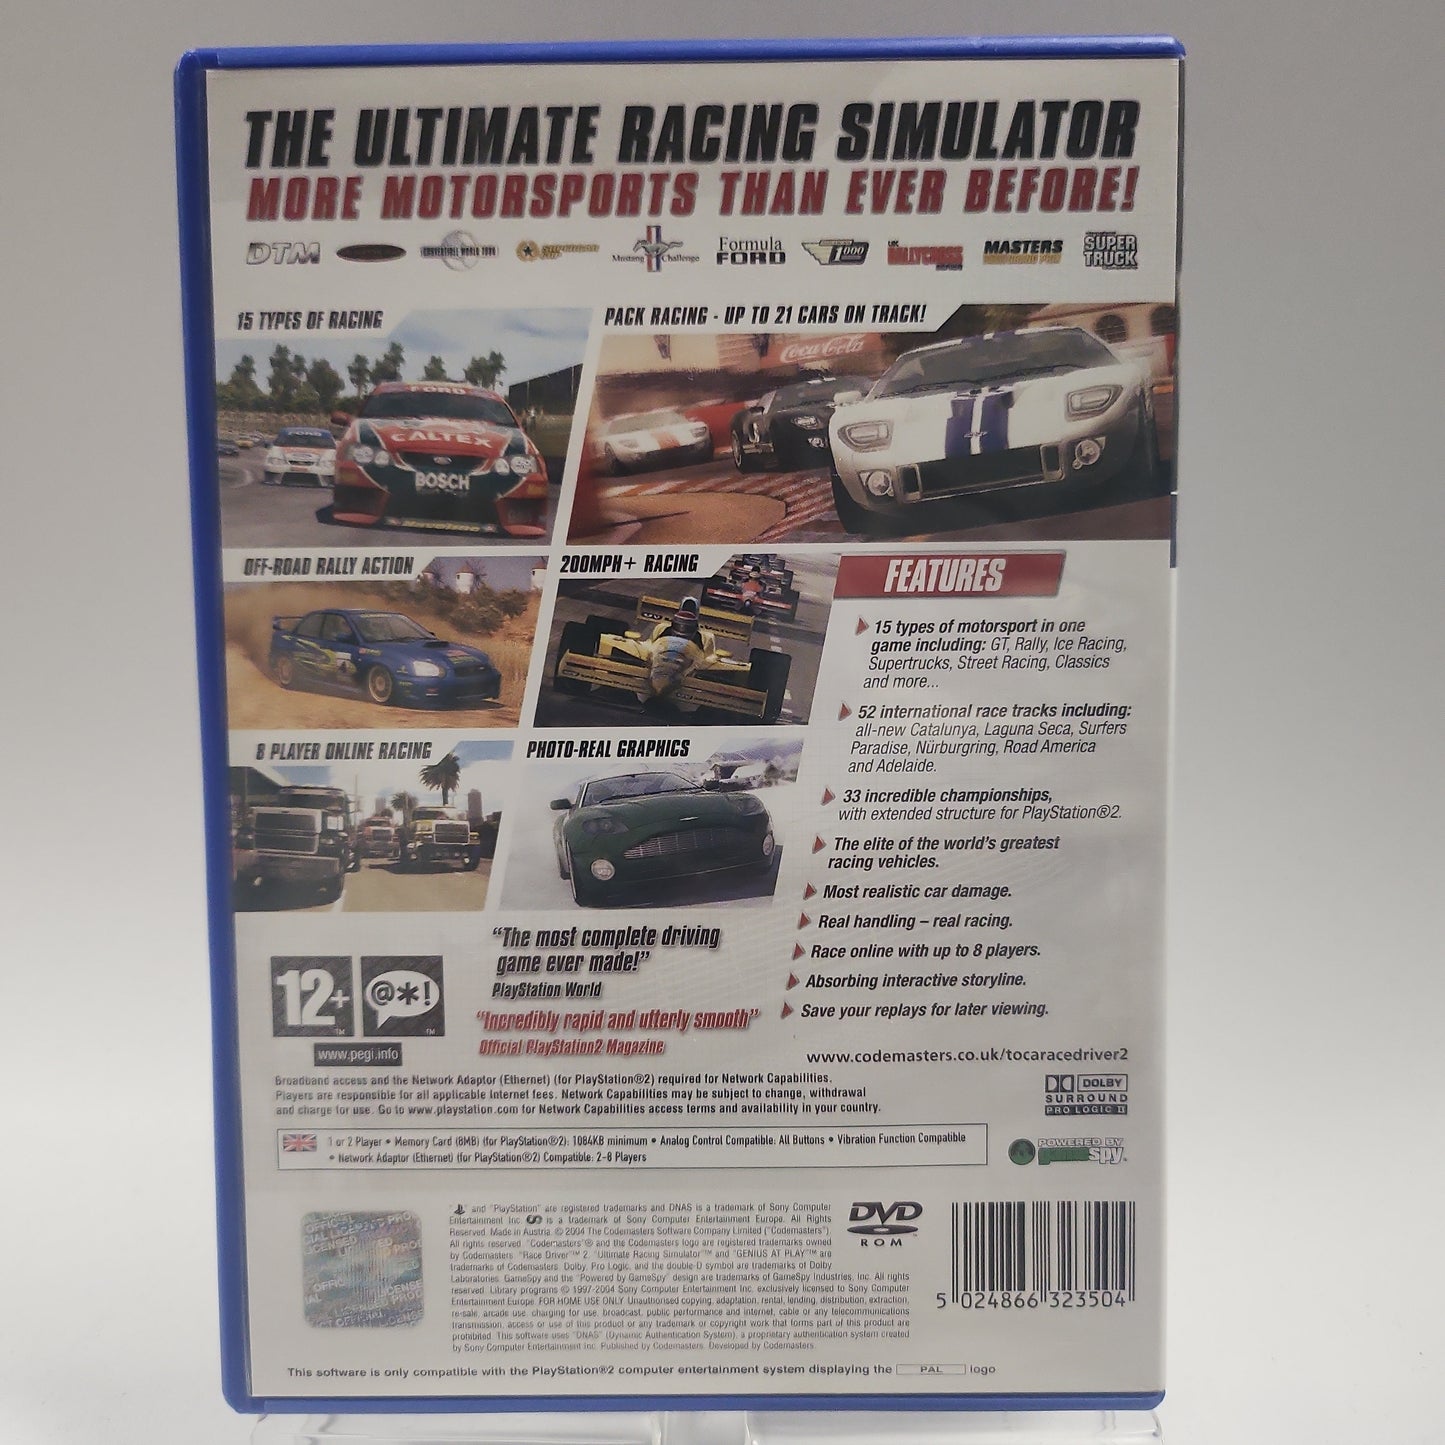 Toca Race Driver 2 (No Book) Playstation 2